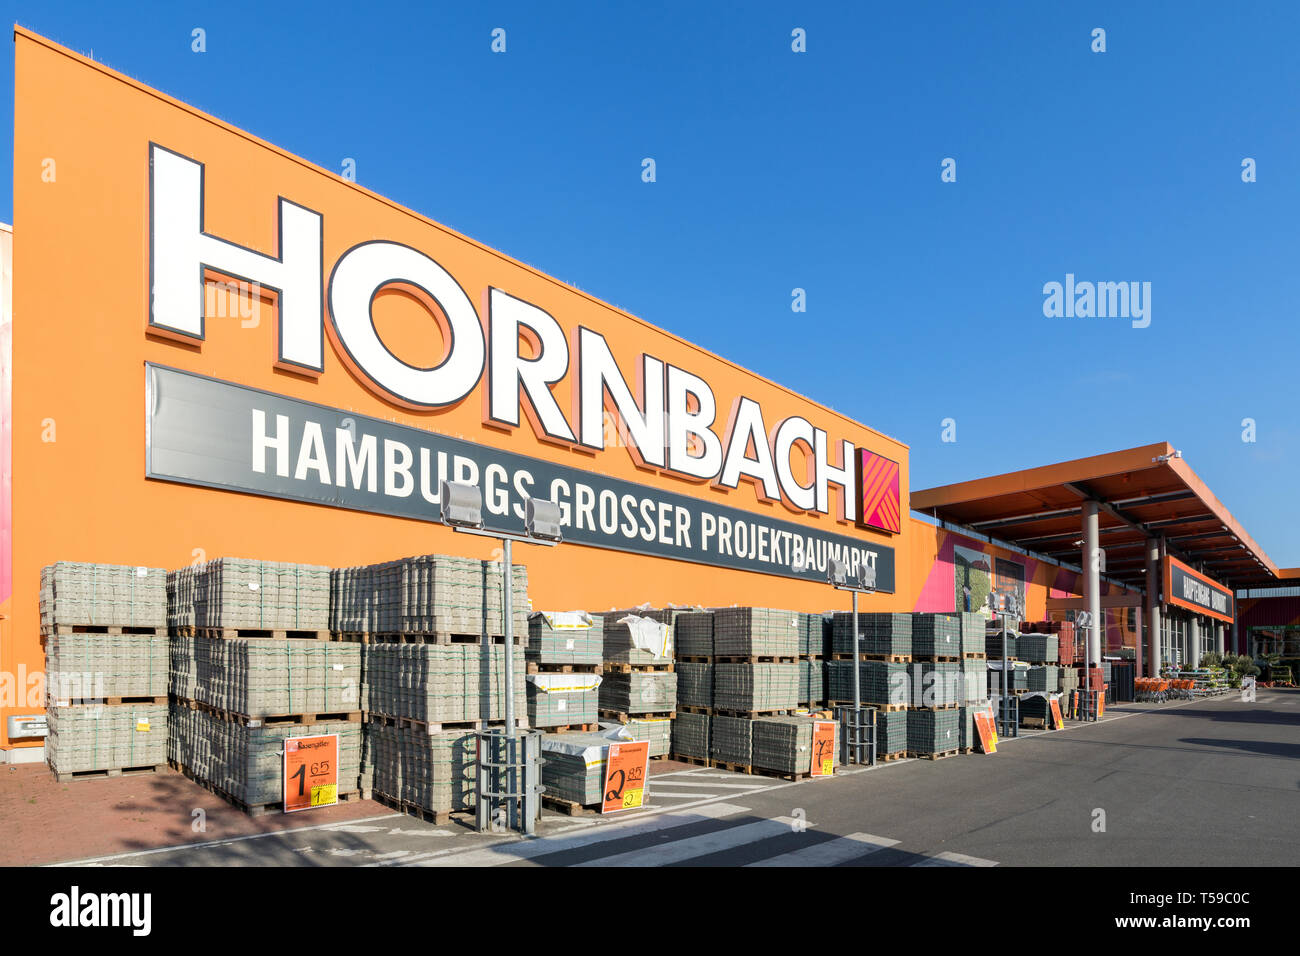 Hornbach ferretería en Hamburgo, Alemania. Hornbach es una cadena de tiendas de bricolaje alemán ofrece mejoras del hogar y bricolaje mercancías. Foto de stock